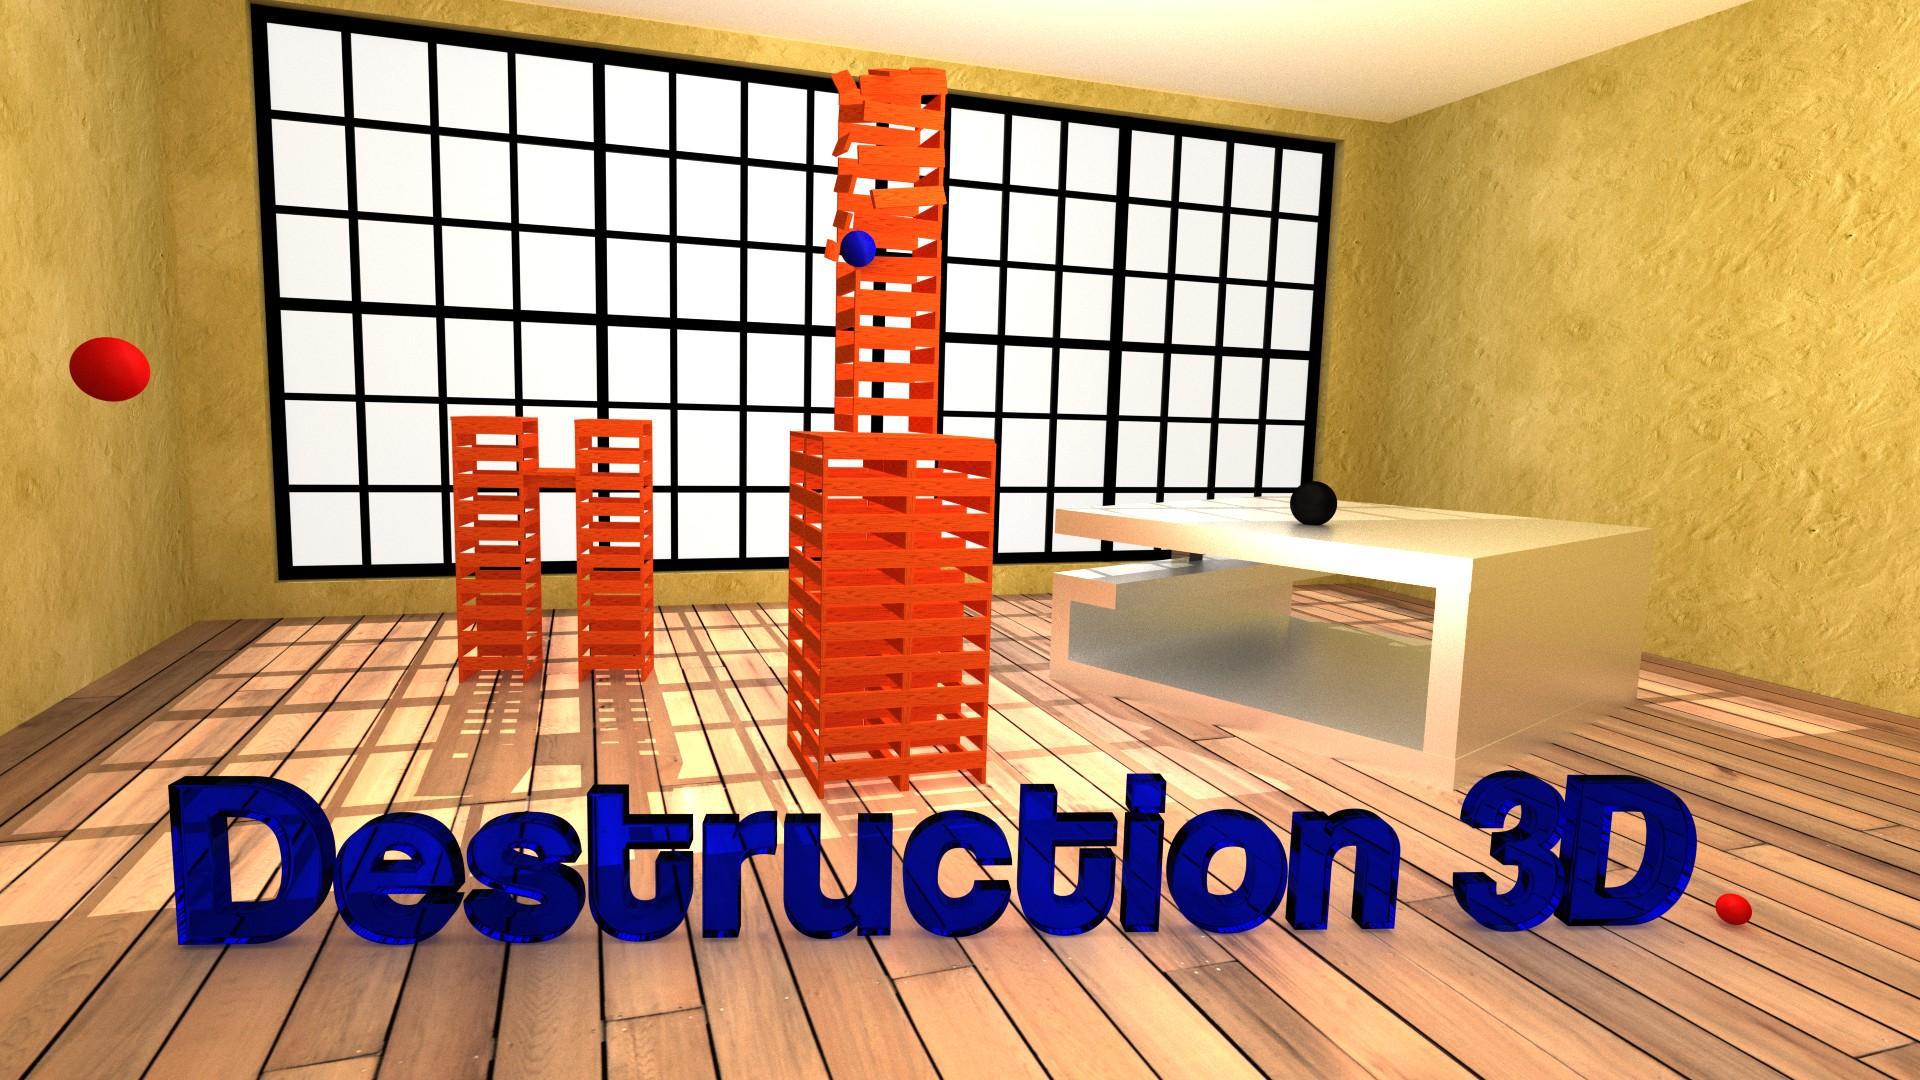 Destruction 3D